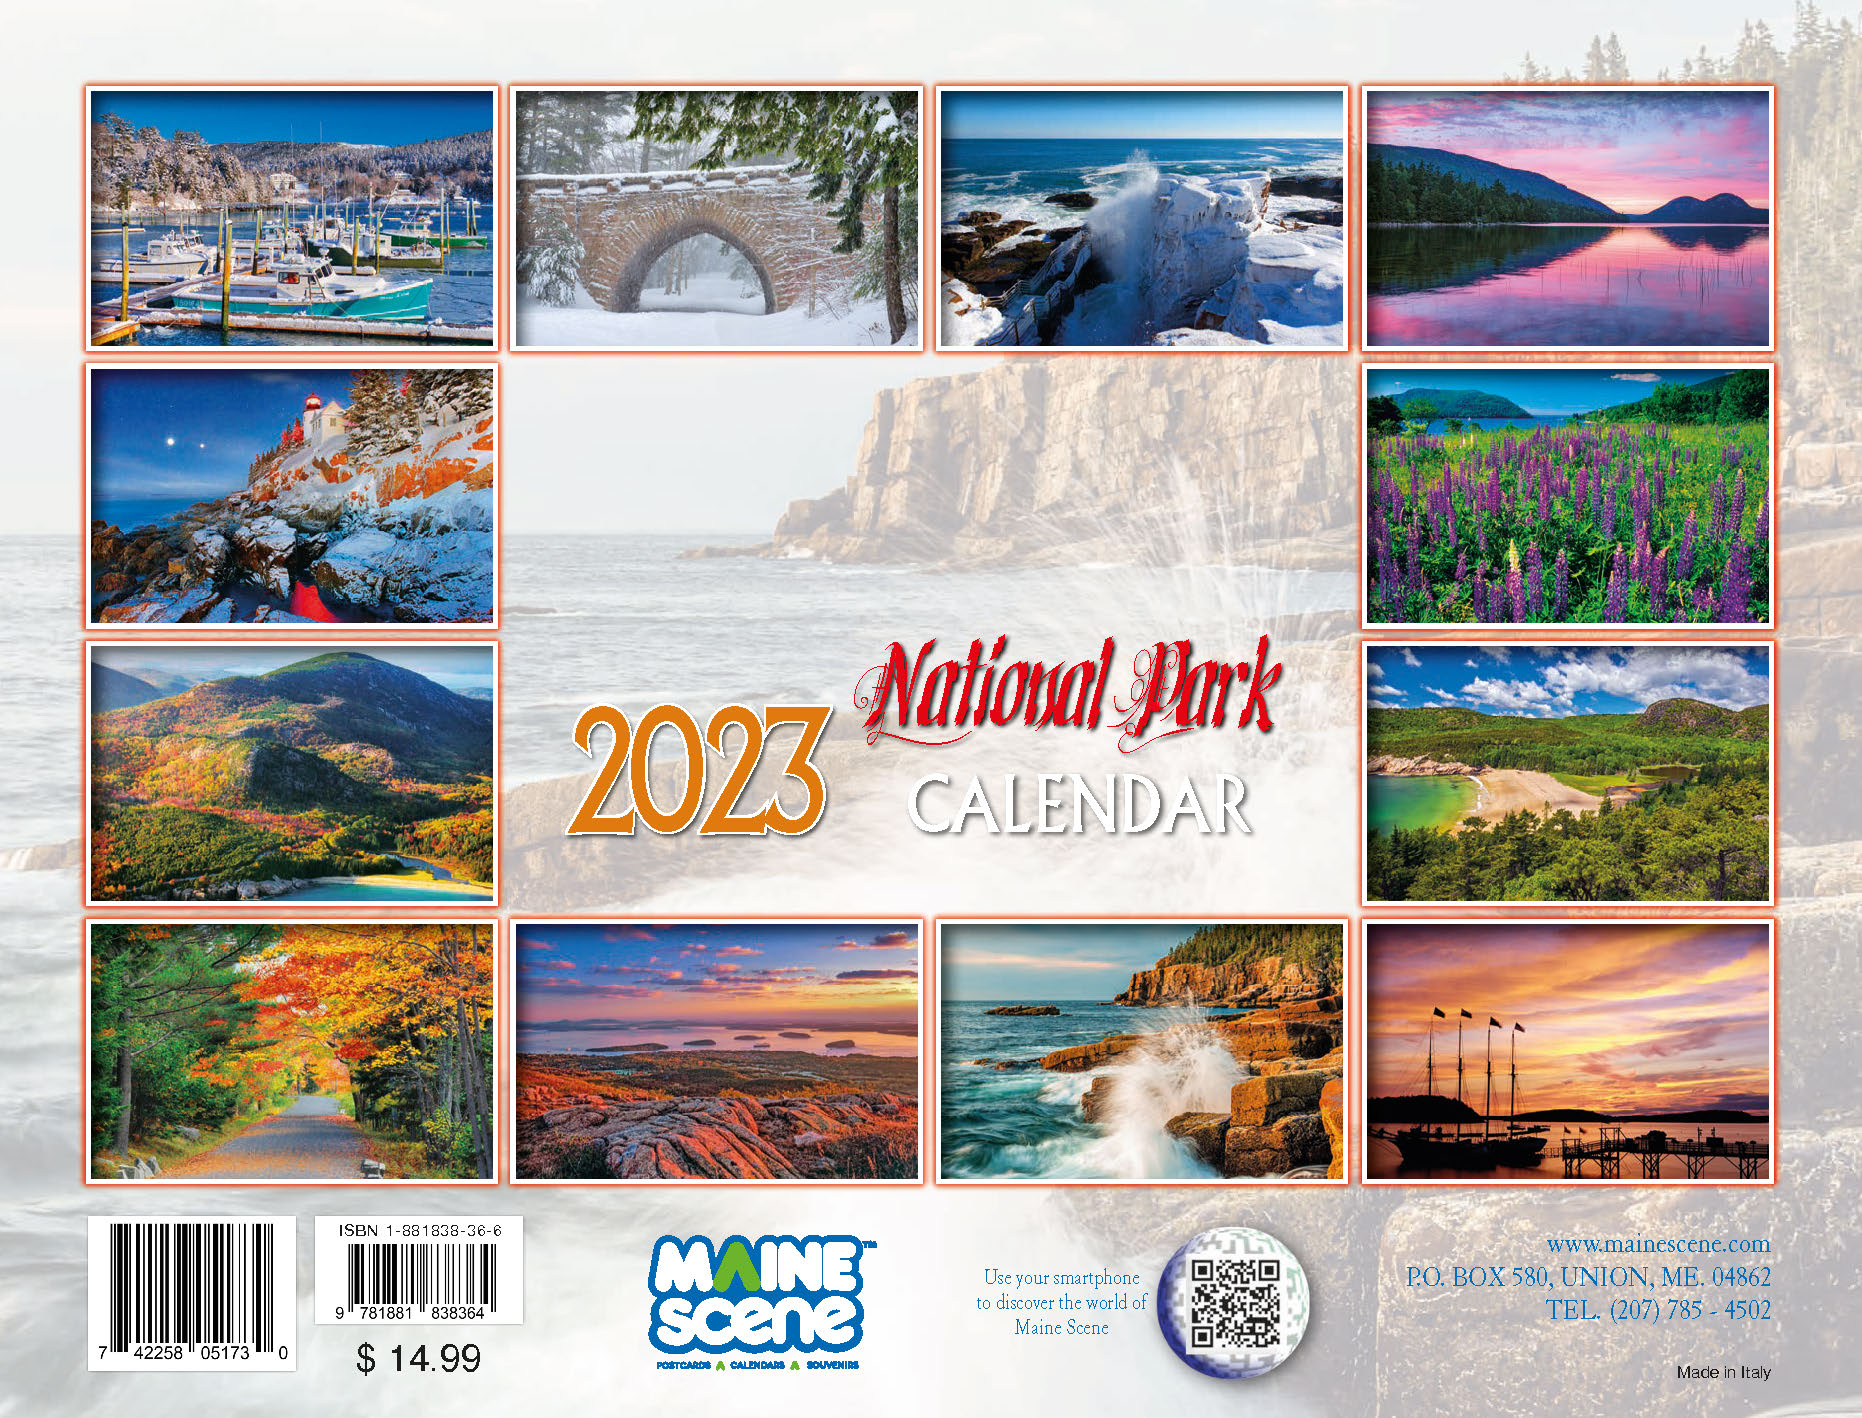 acadia-national-park-calendar-maine-scene-maine-souvenirs-and-calendars